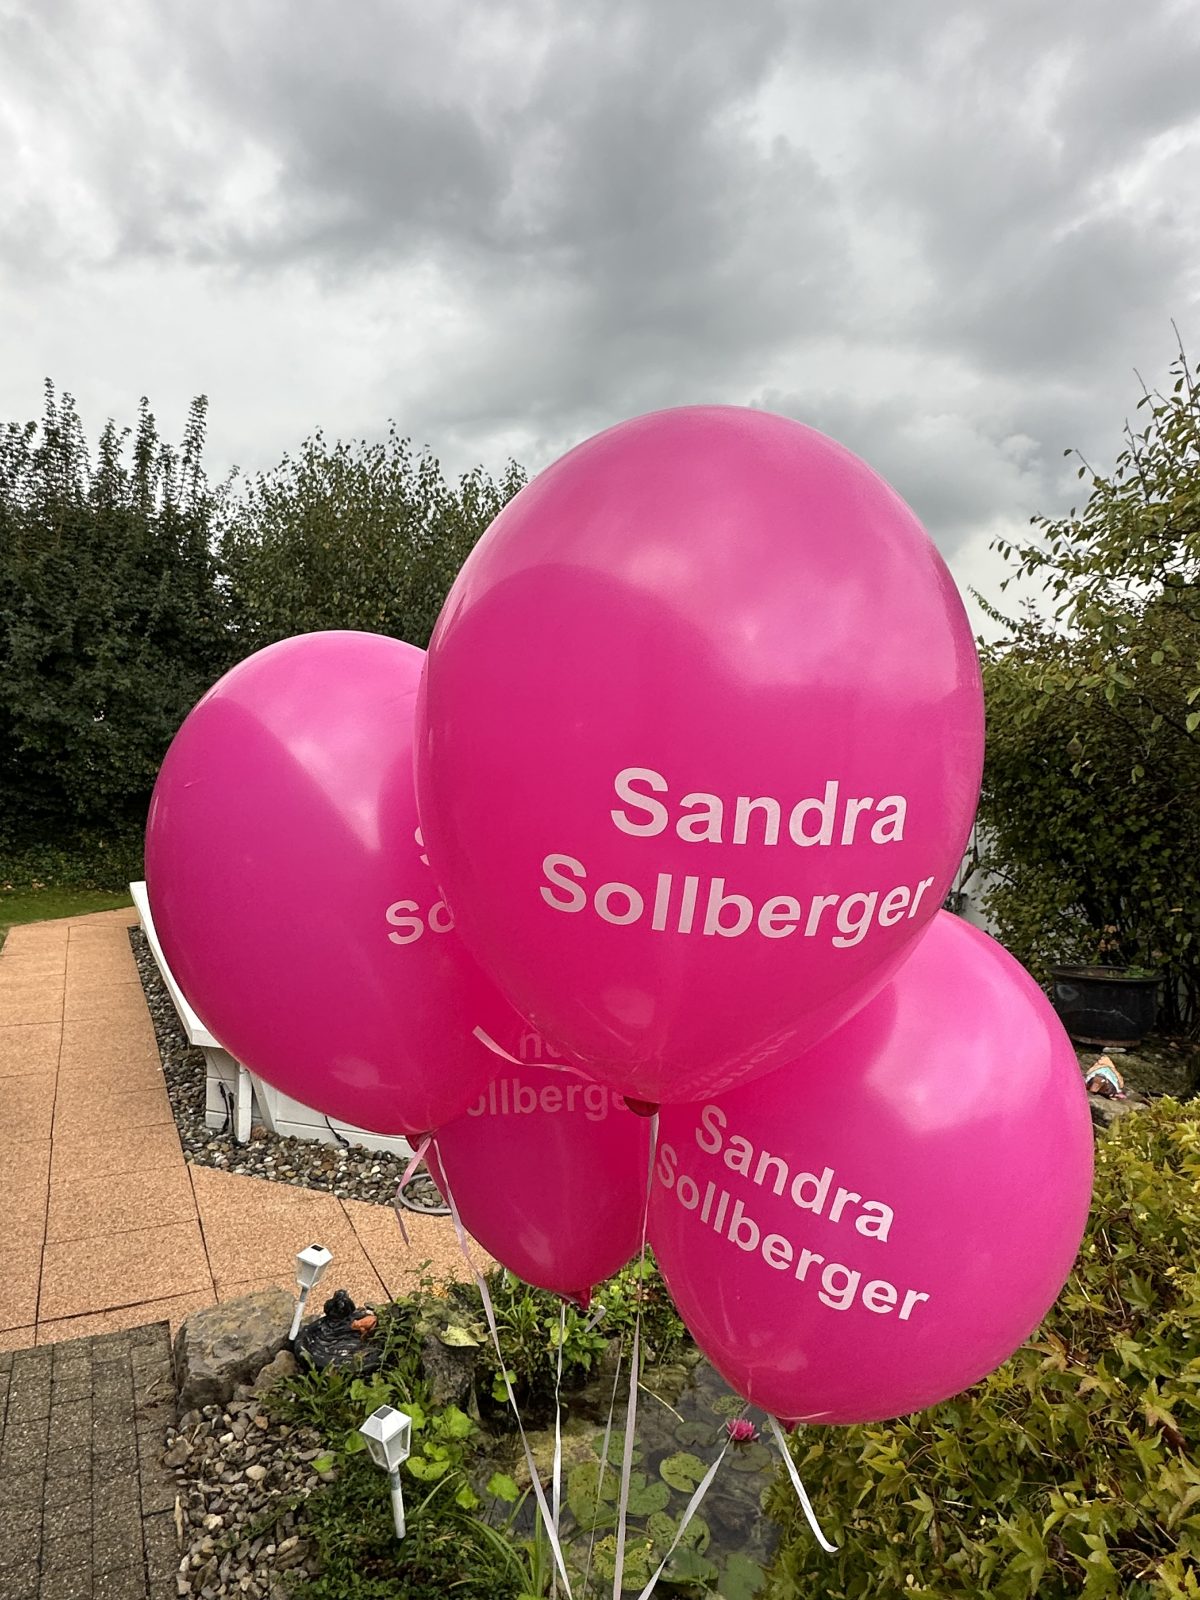 Sandra Sollberger, Plakatieren – Blachen, Plakate und Ballone